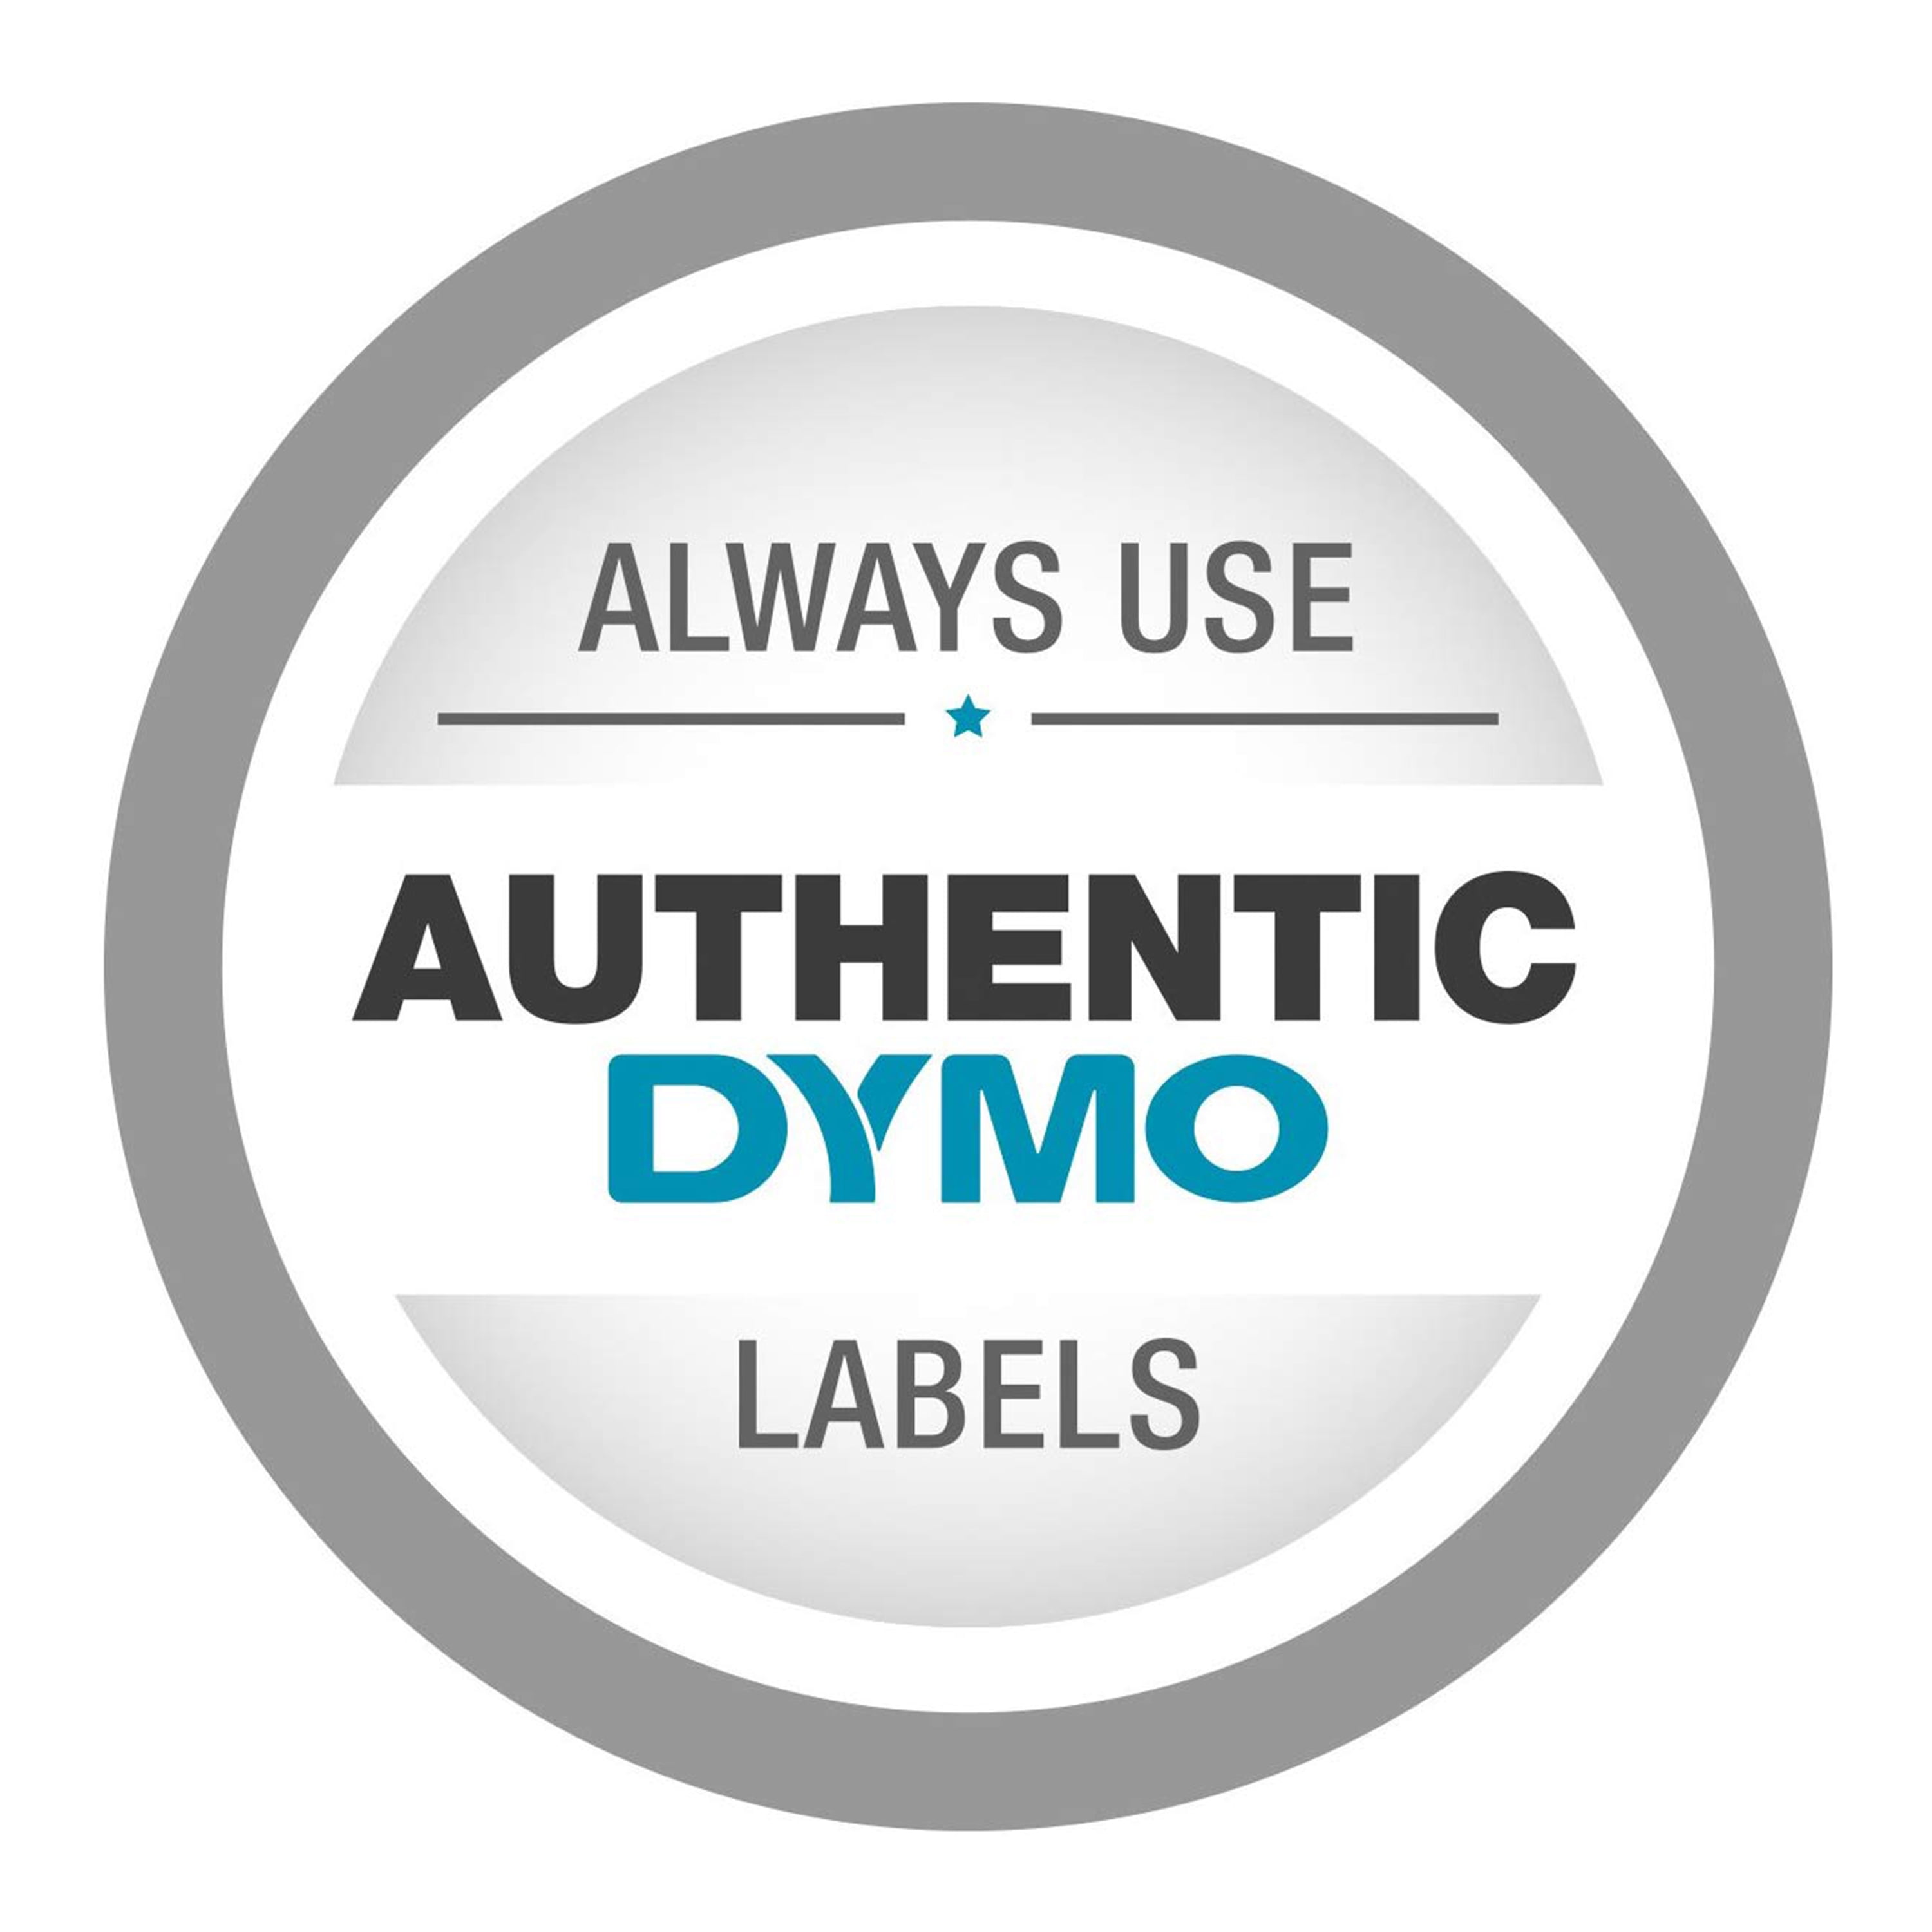 1 ⅛ x 3 ½ - Dymo Address Label